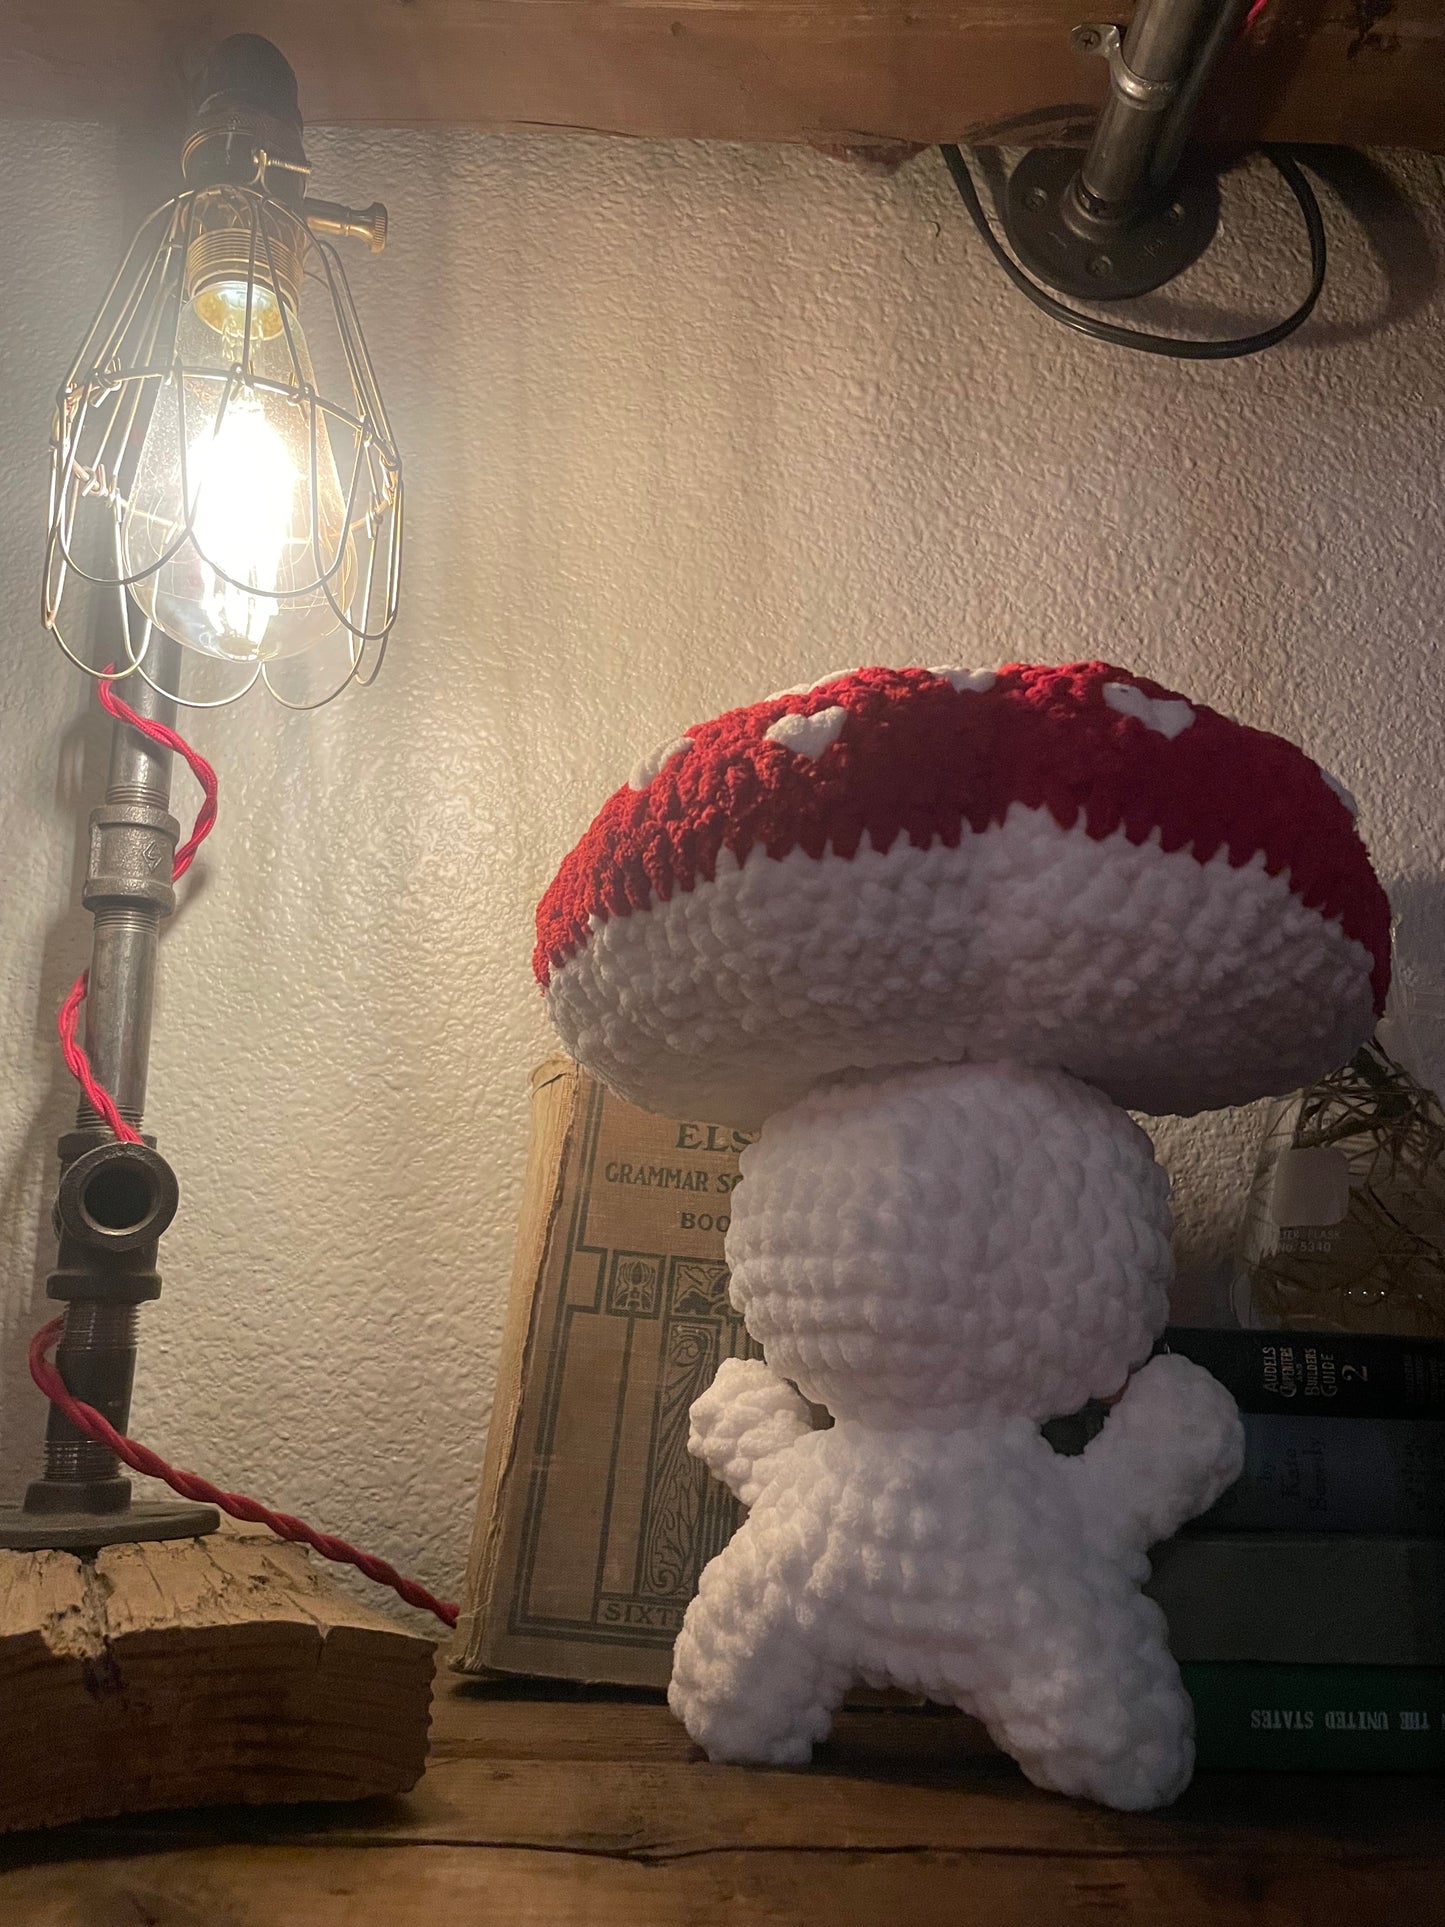 Crochet Love Mushroom Plushie